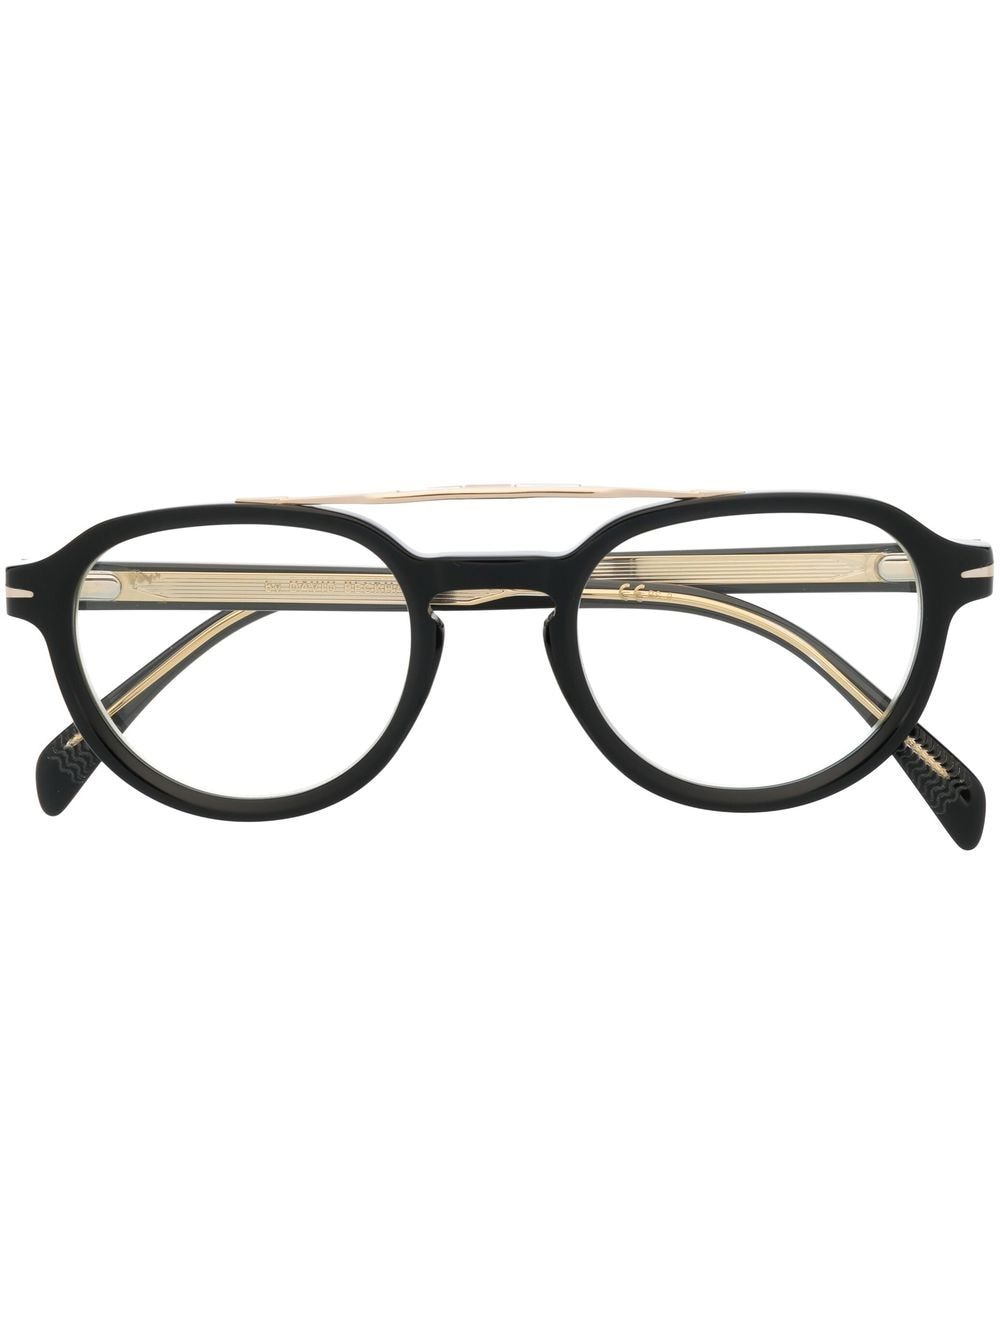 Eyewear by David Beckham round-frame optical glasses - Black von Eyewear by David Beckham